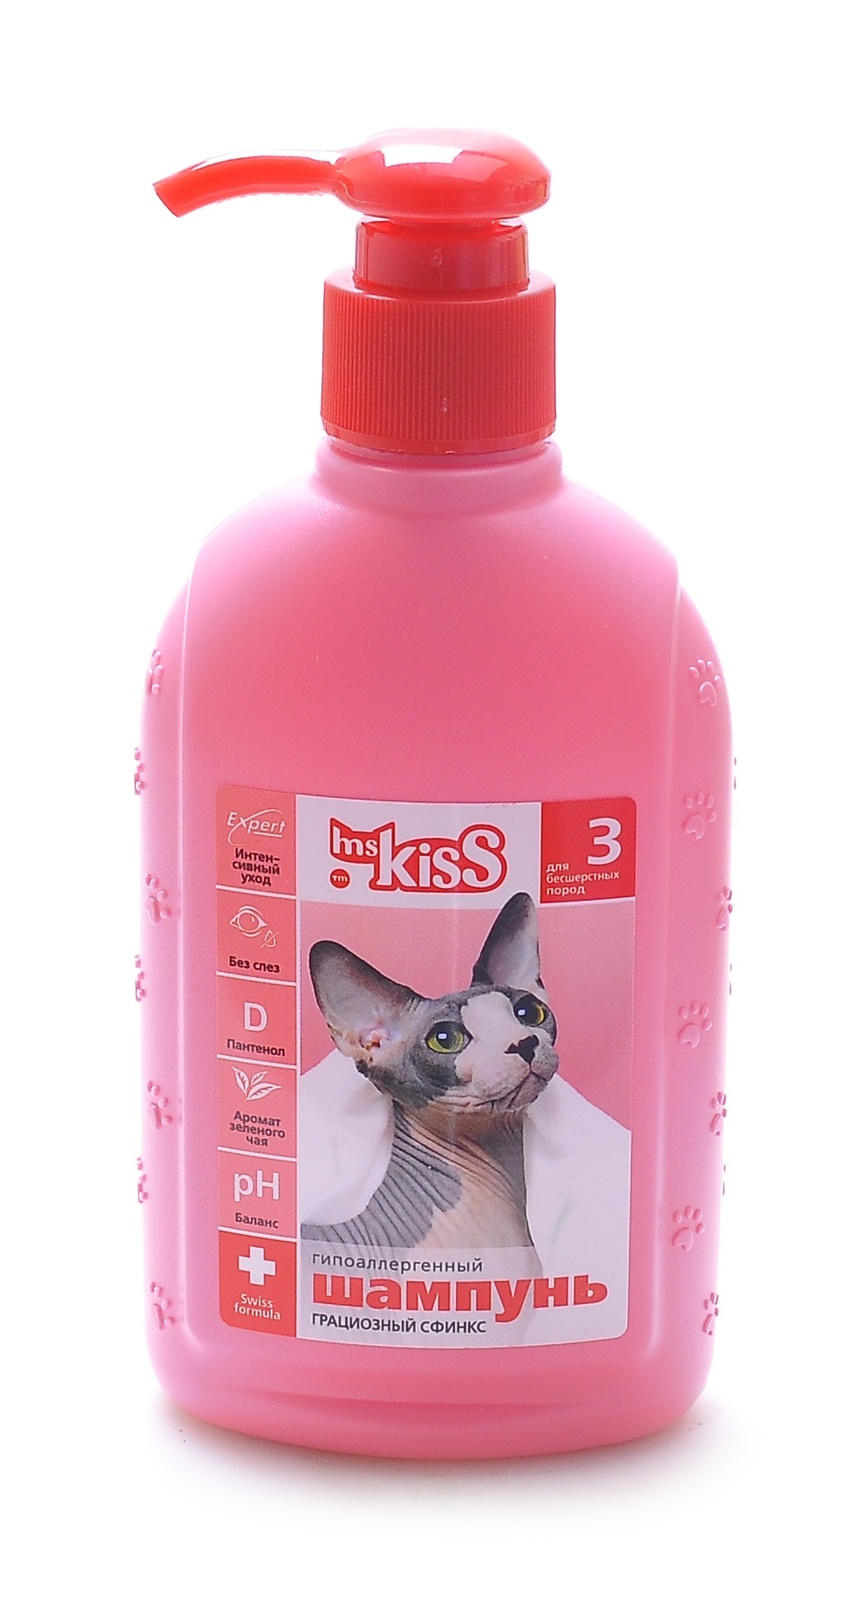 Ms.Kiss Ms.Kiss шампунь для бесшерстных пород Грациозный сфинкс (200 г) шампунь кондиционер ms kiss грациозный сфинкс для бесшерстных кошек 200 мл 233 г